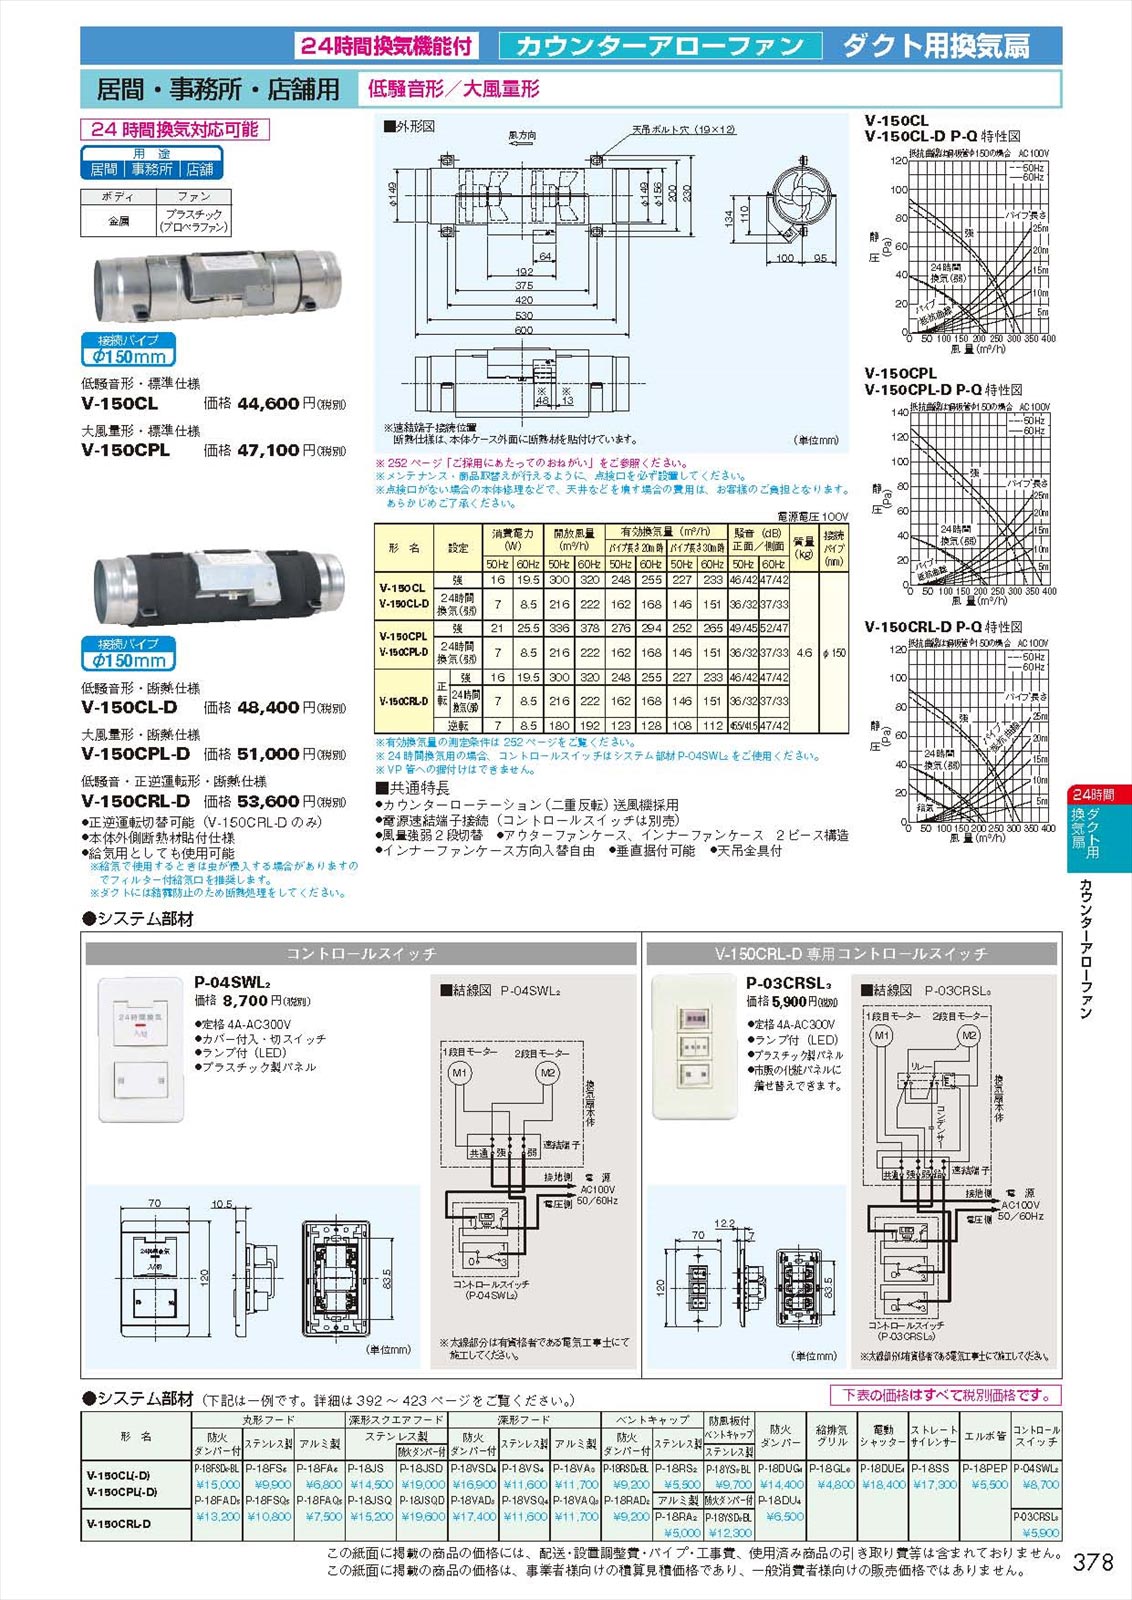 安心の実績 高価 買取 強化中 三菱電機 P-03CRSL3 ダクト用換気扇部材 MITSUBISHI